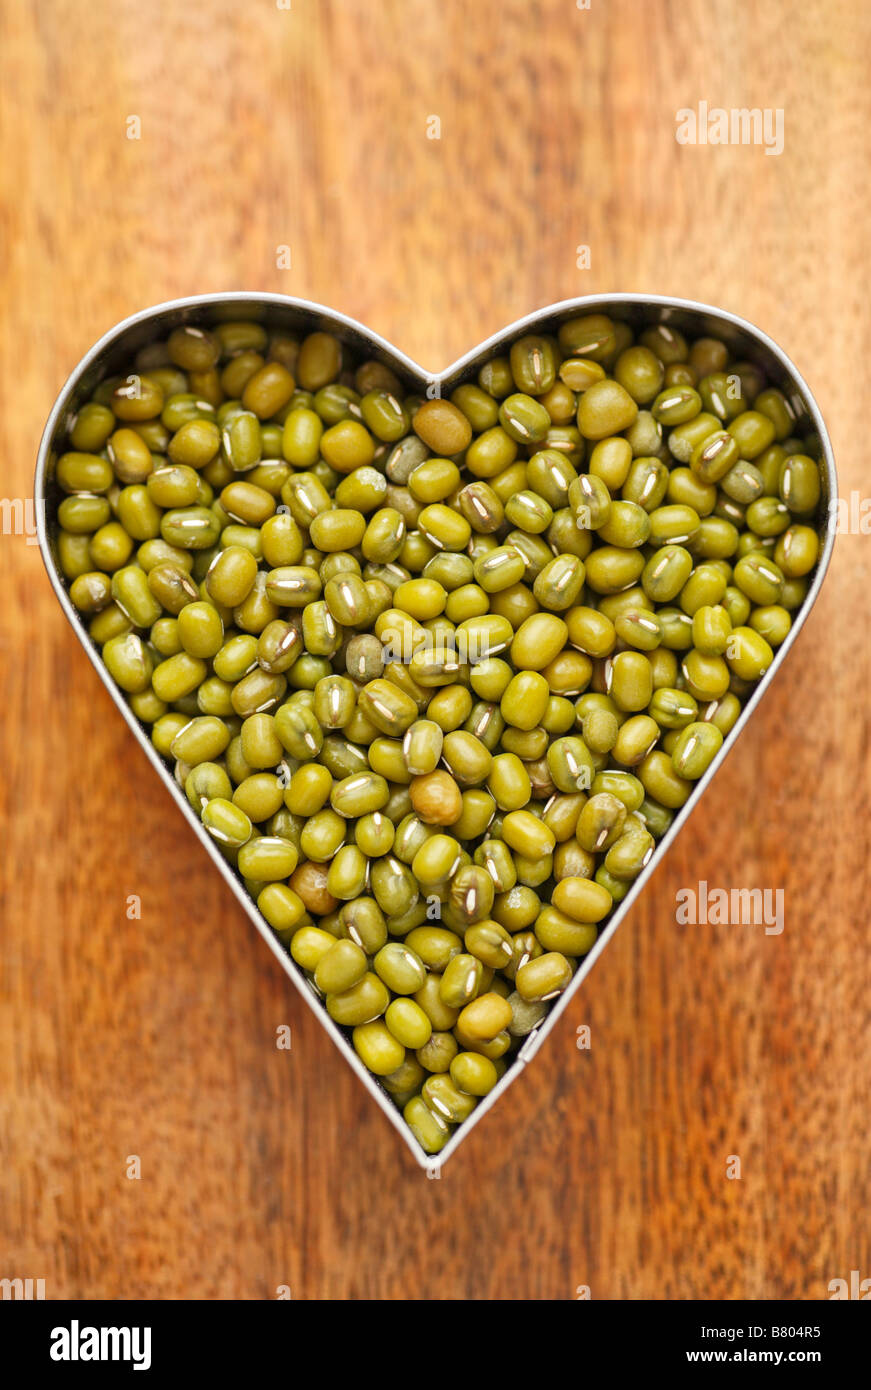 Mung beans held inside a heart shape. Stock Photo